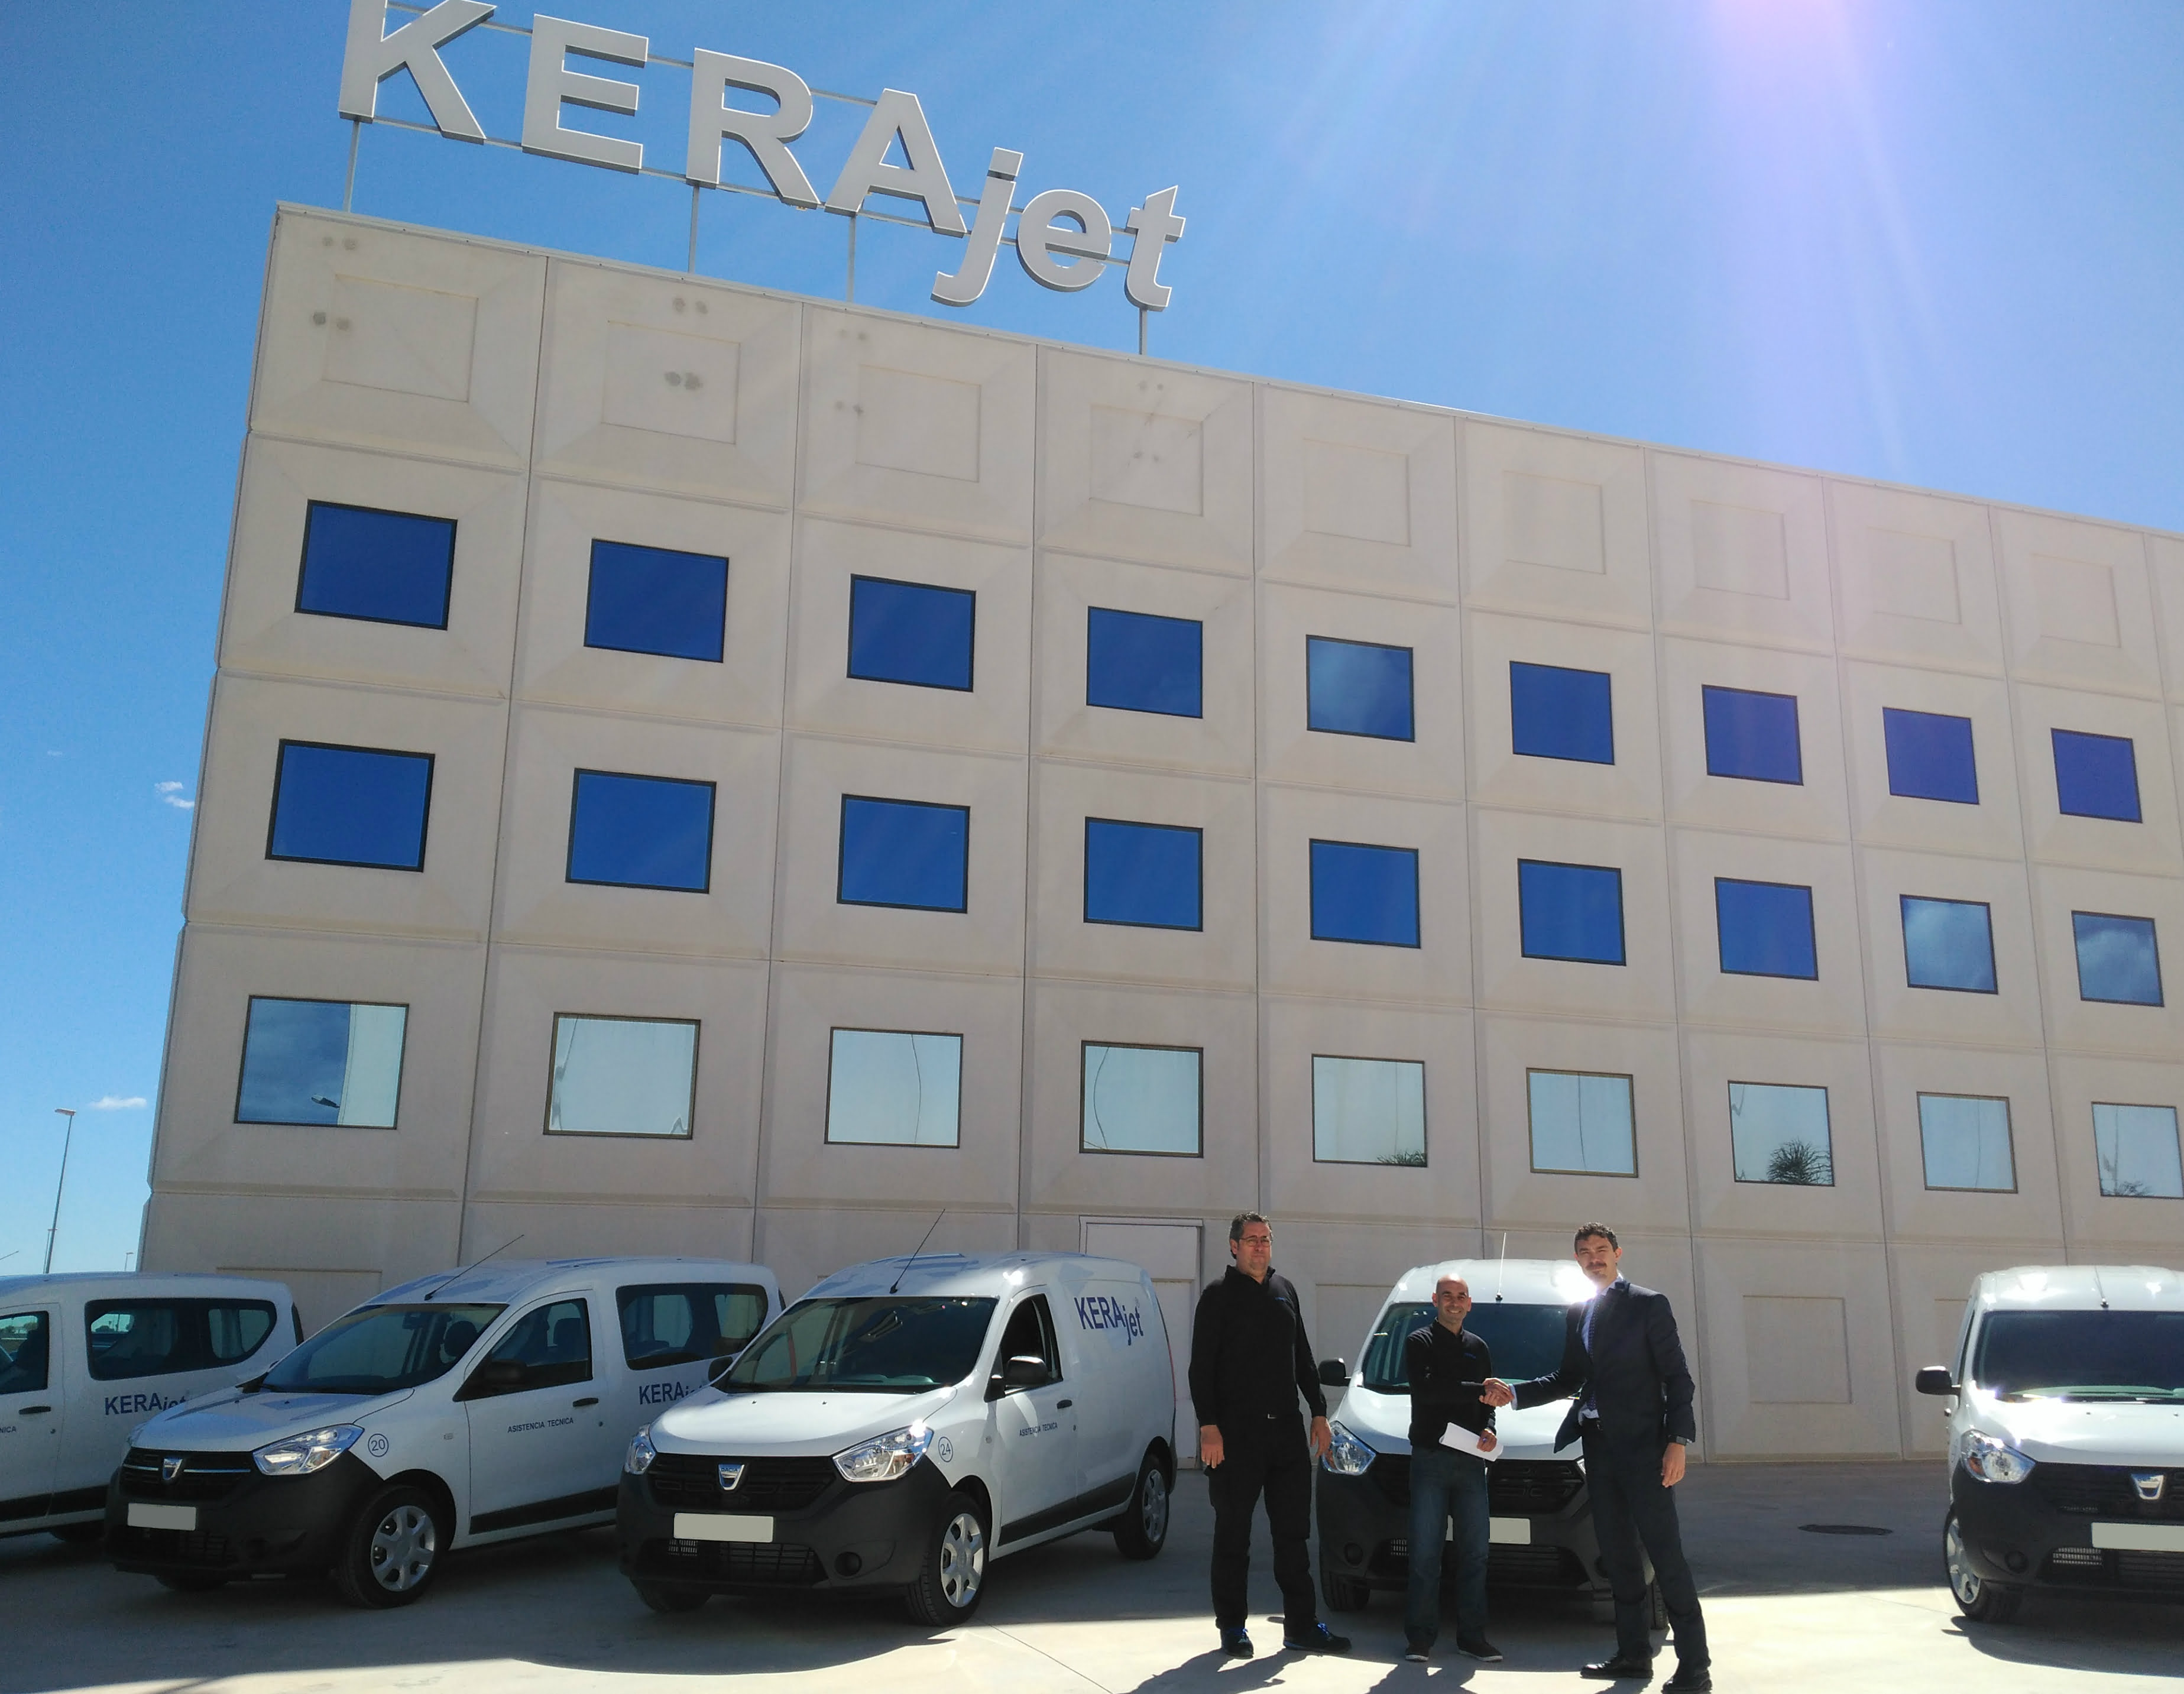 KERAjet, líder en impresión digital cerámica, renueva su flota con la gama Dacia